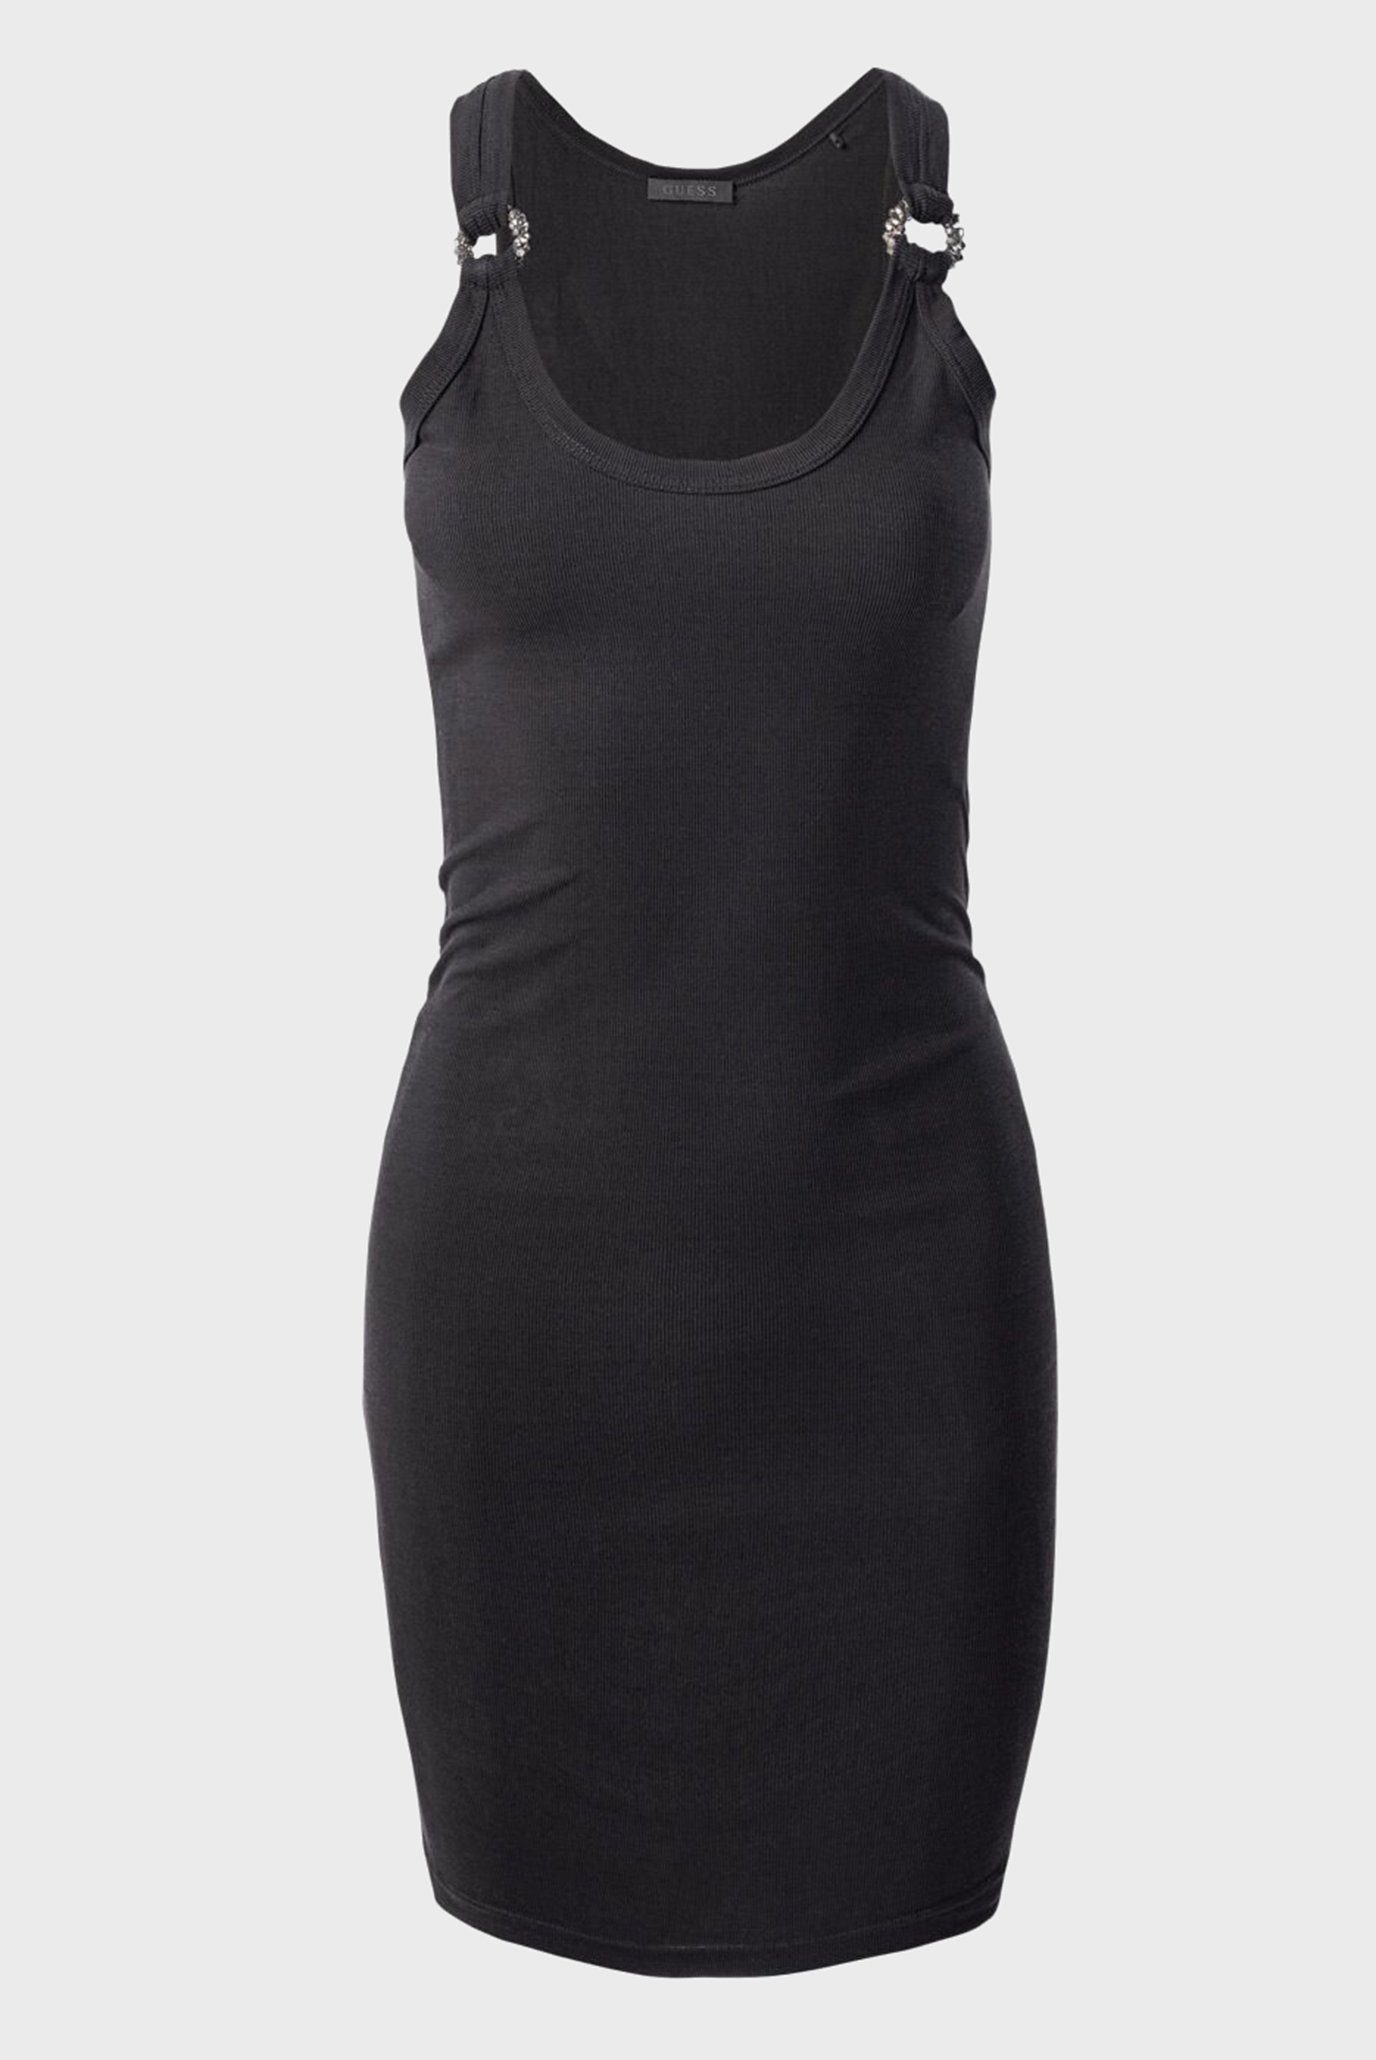 Женское черное платье SL CHRISTINA JEWEL D 1